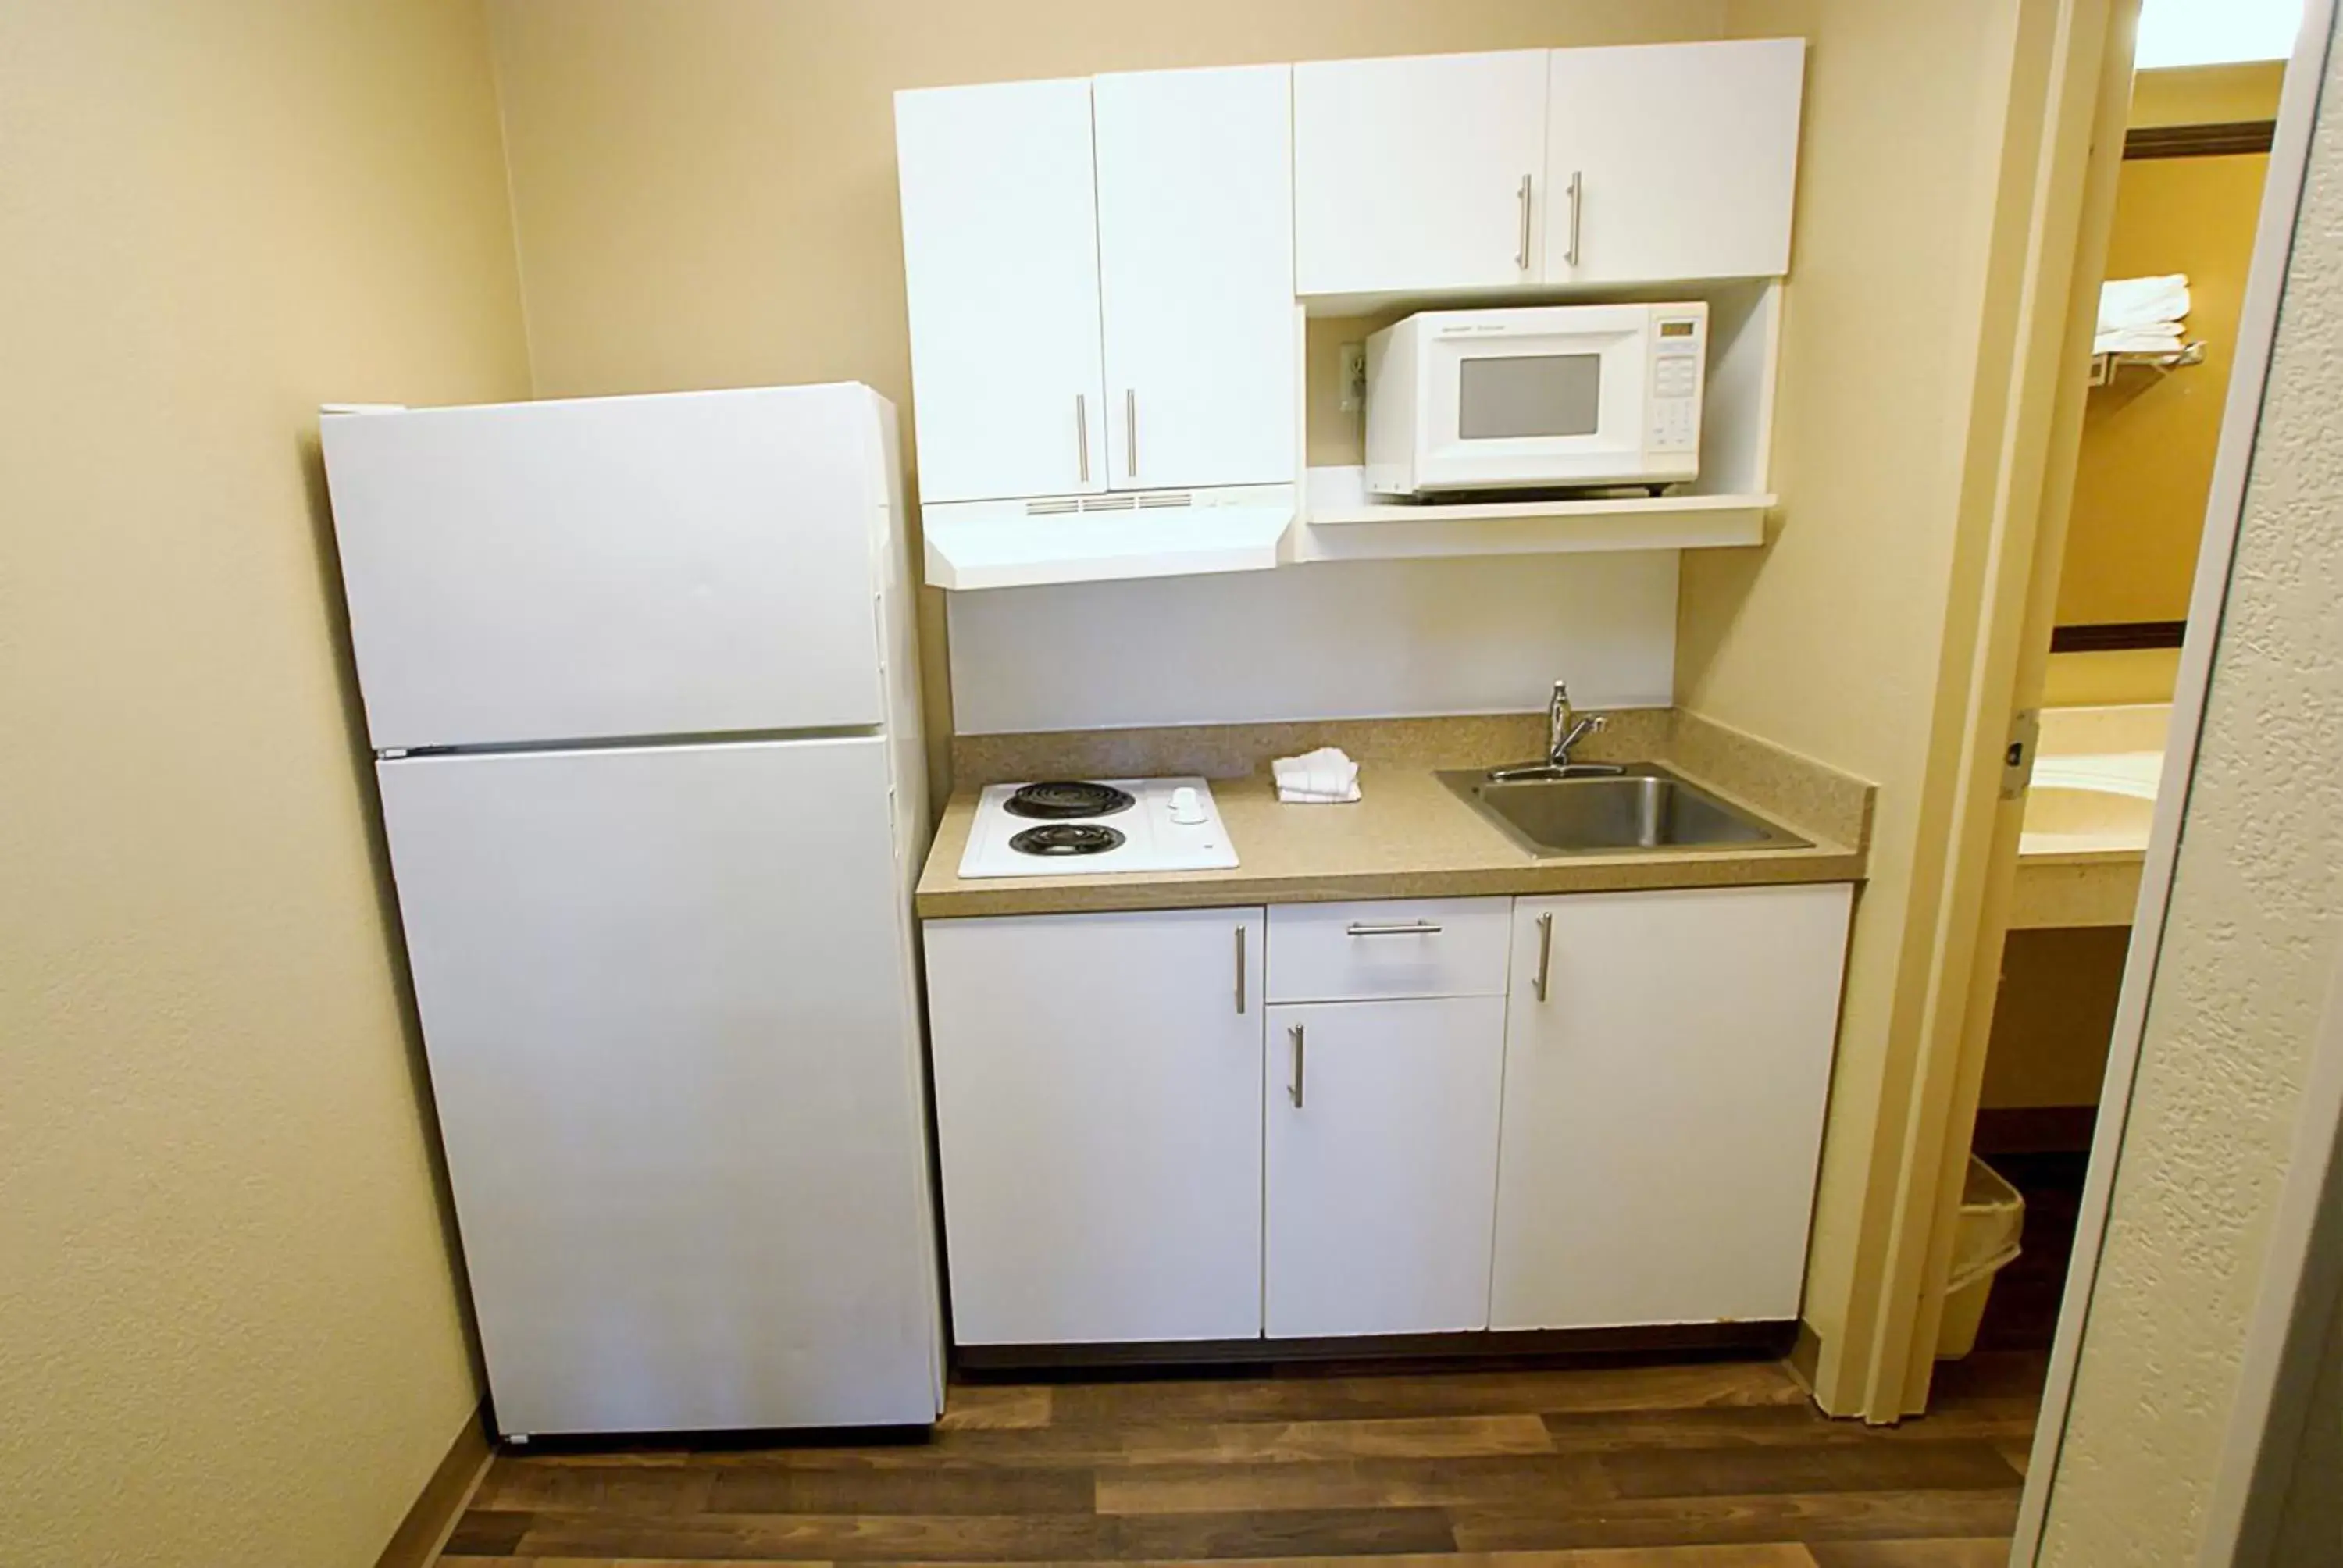 Kitchen or kitchenette, Kitchen/Kitchenette in Extended Stay America Suites - Cincinnati - Springdale - I-275